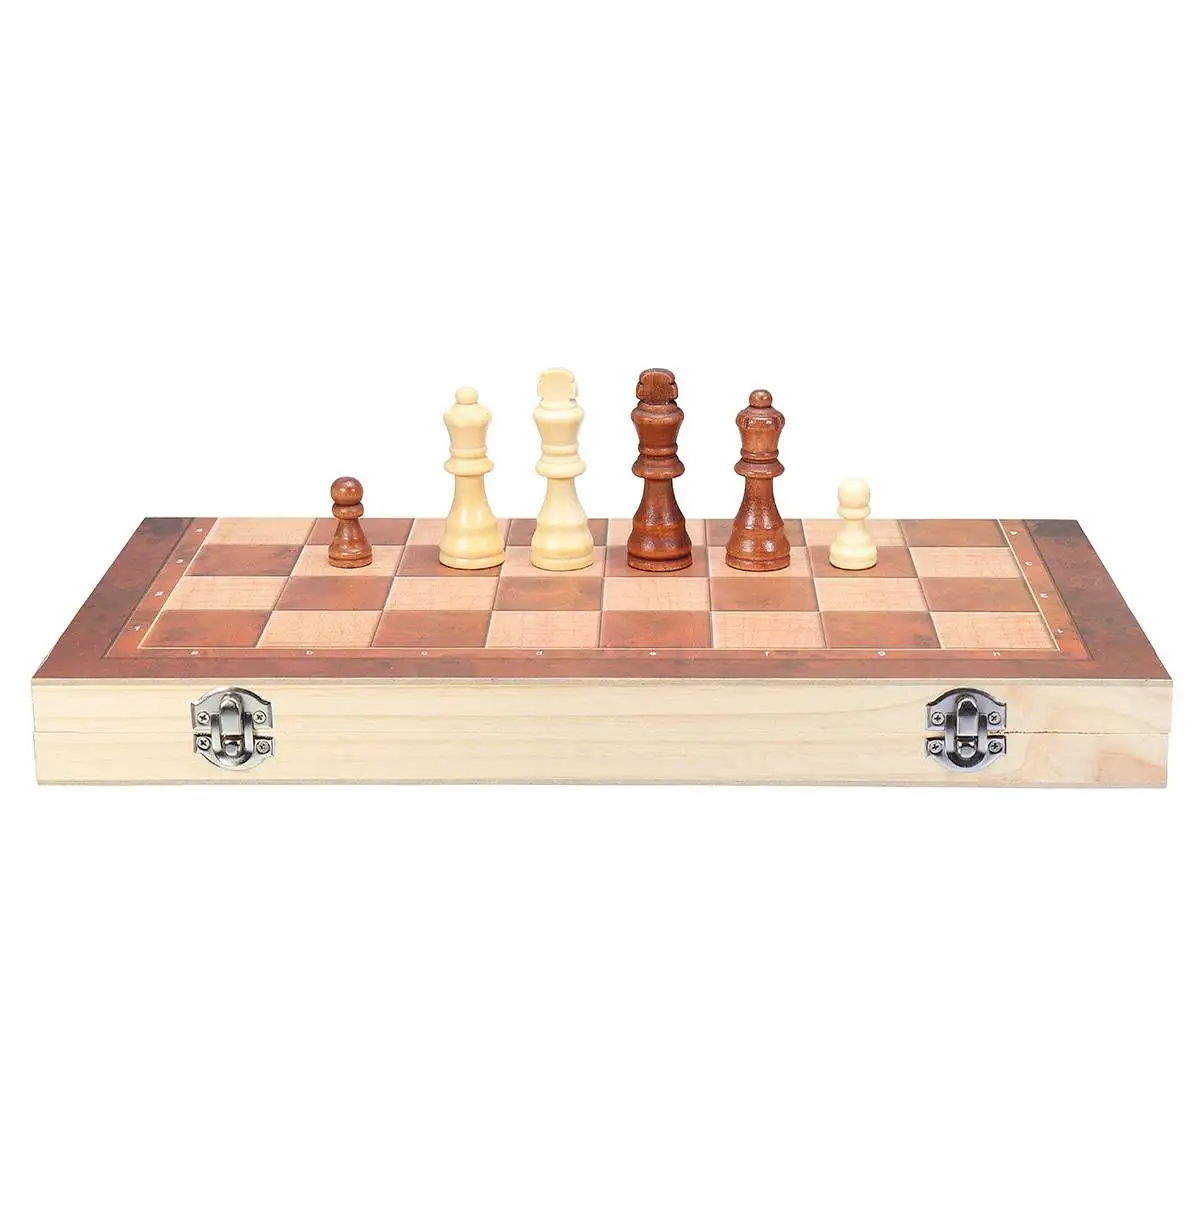 39 см X 39 см Деревянный Международный шахматный набор настольная игра Складная магнитная складная доска упаковка 3 в 1 ШАХМАТЫ 2 размера